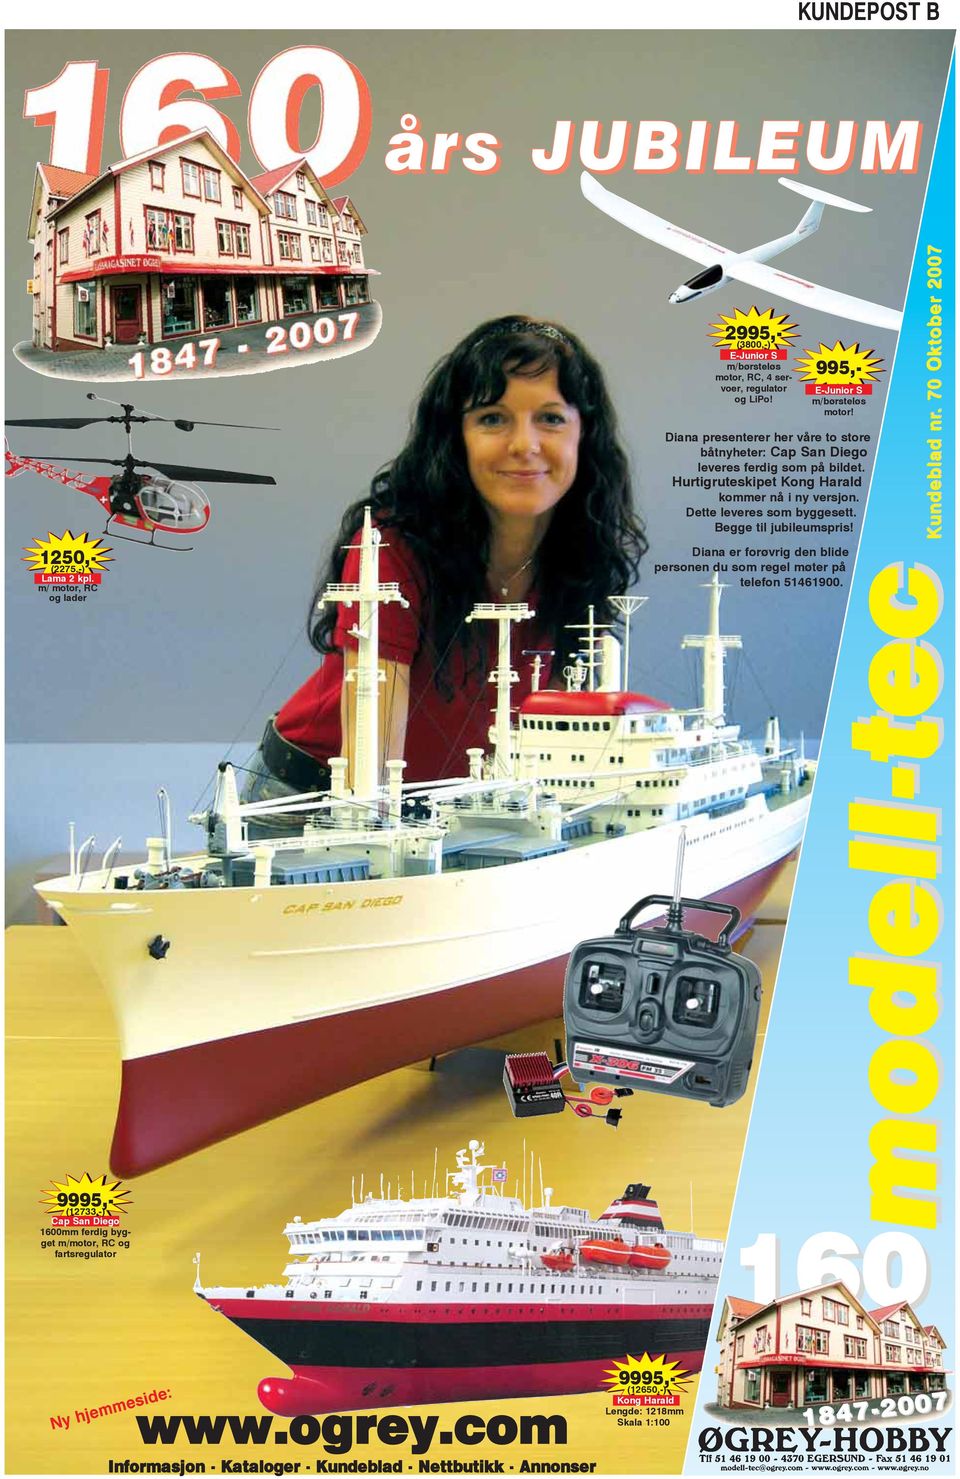 995,- E-Junior S m/børsteløs motor! Diana presenterer her våre to store båtnyheter: Cap San Diego leveres ferdig som på bildet. Hurtigruteskipet Kong Harald kommer nå i ny versjon.